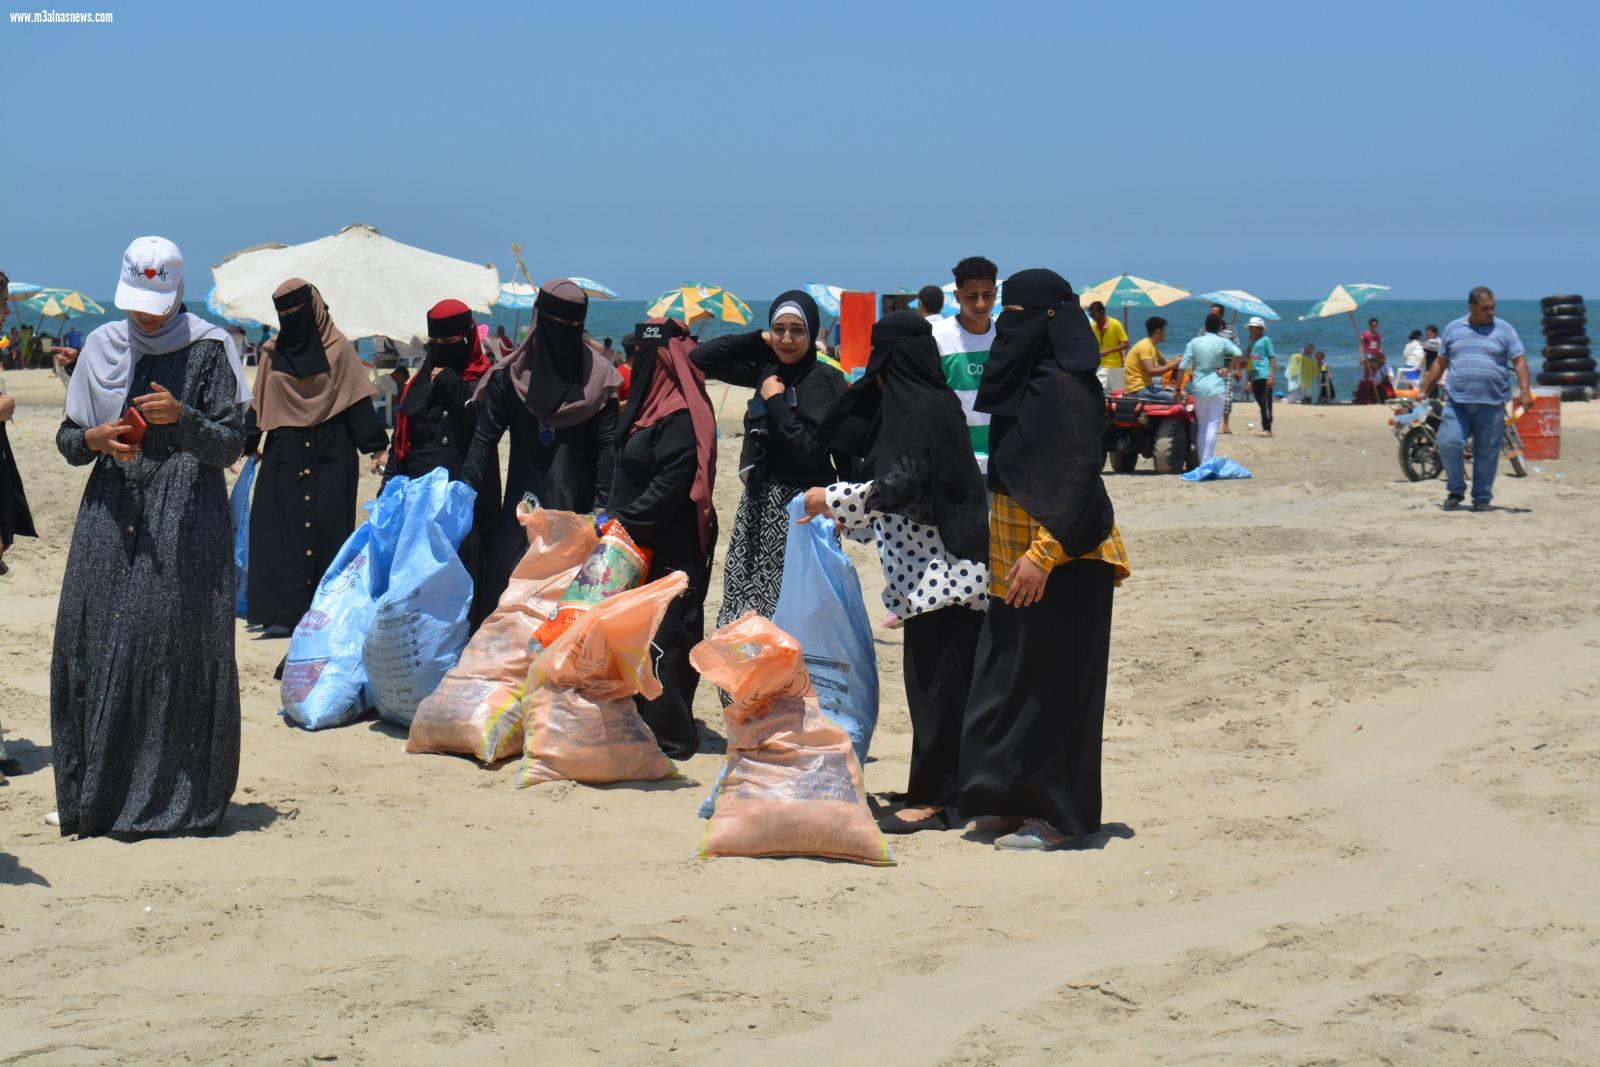 جمعية النهضة للتنمية الزراعية تشارك مصيف بلطيم تنظيف شاطىء الأمل من النفايات